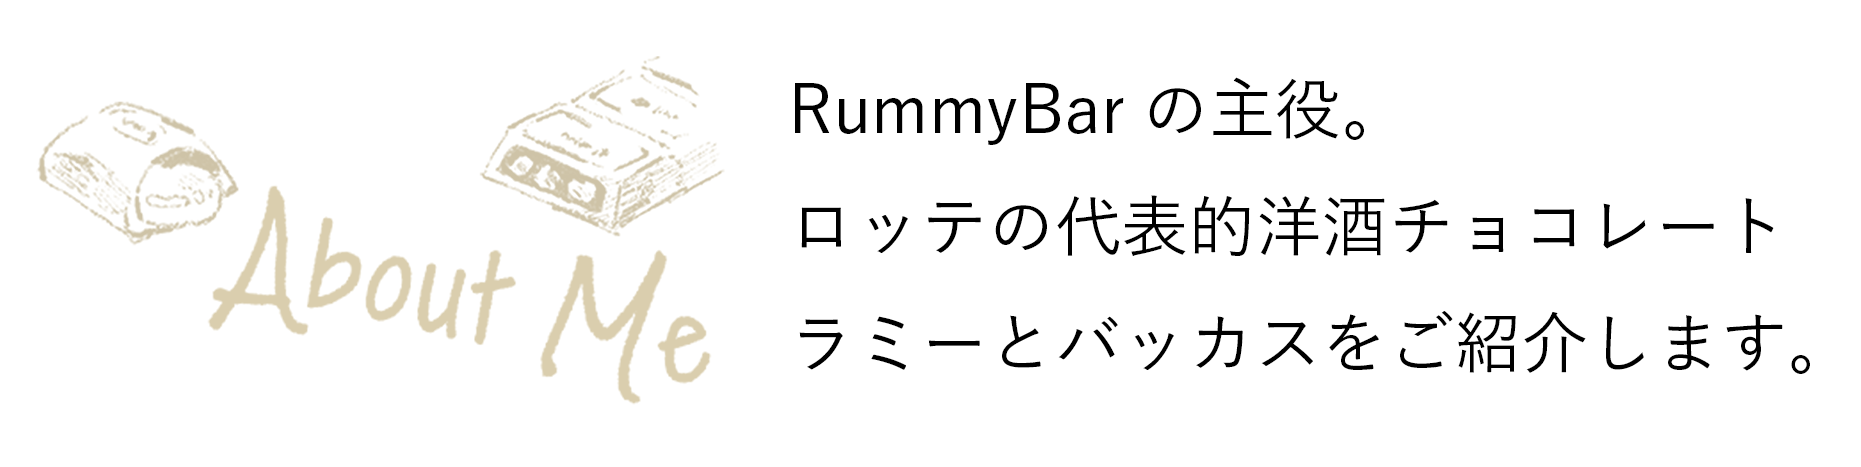 RummyBarの主役。ロッテの代表的洋酒チョコレートラミーとバッカスをご紹介します。